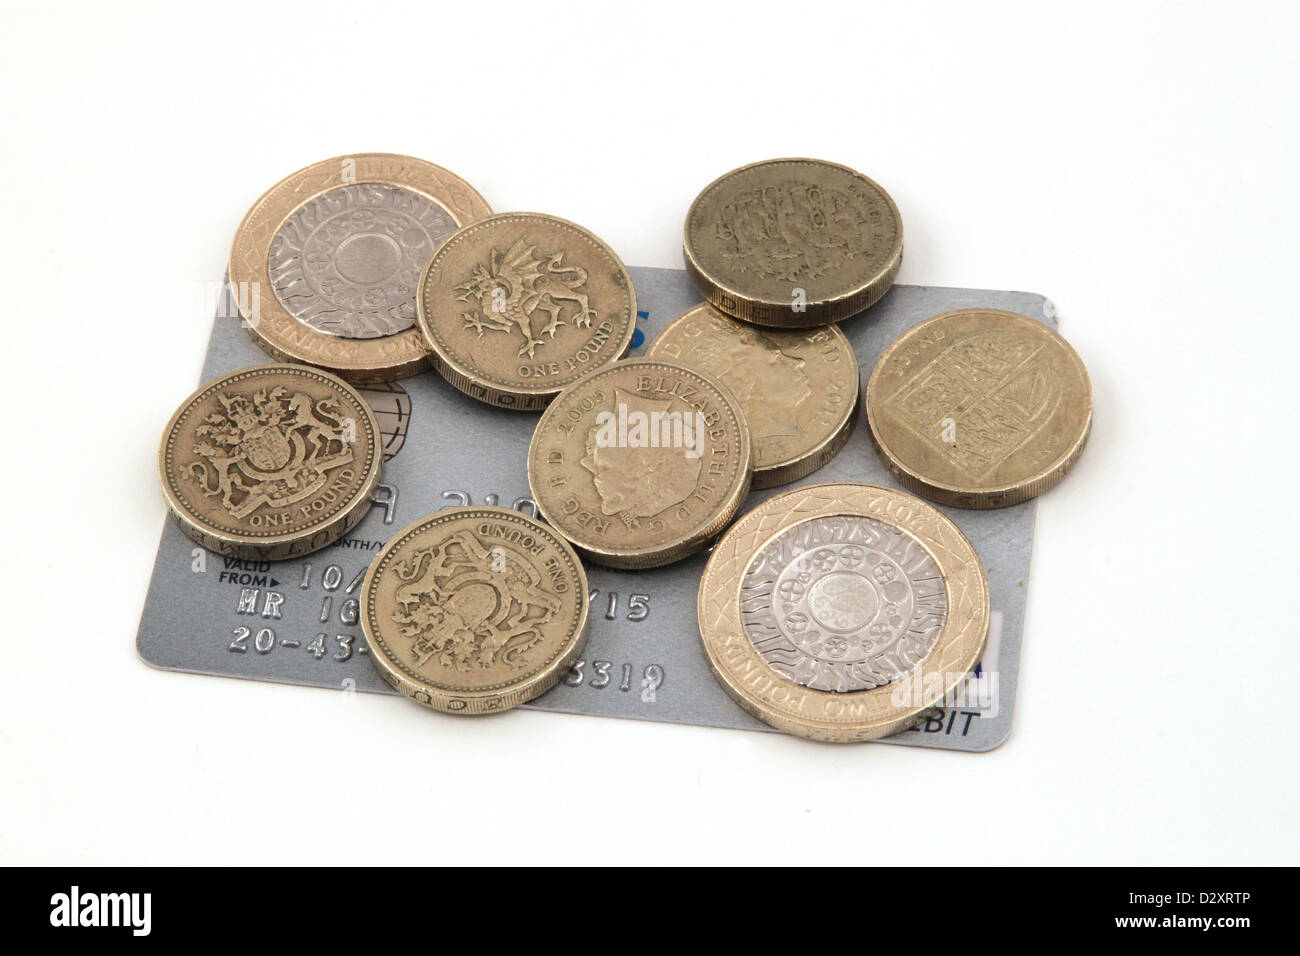 Britische (uk) Währung auf einem weißen Hintergrund. Stockfoto